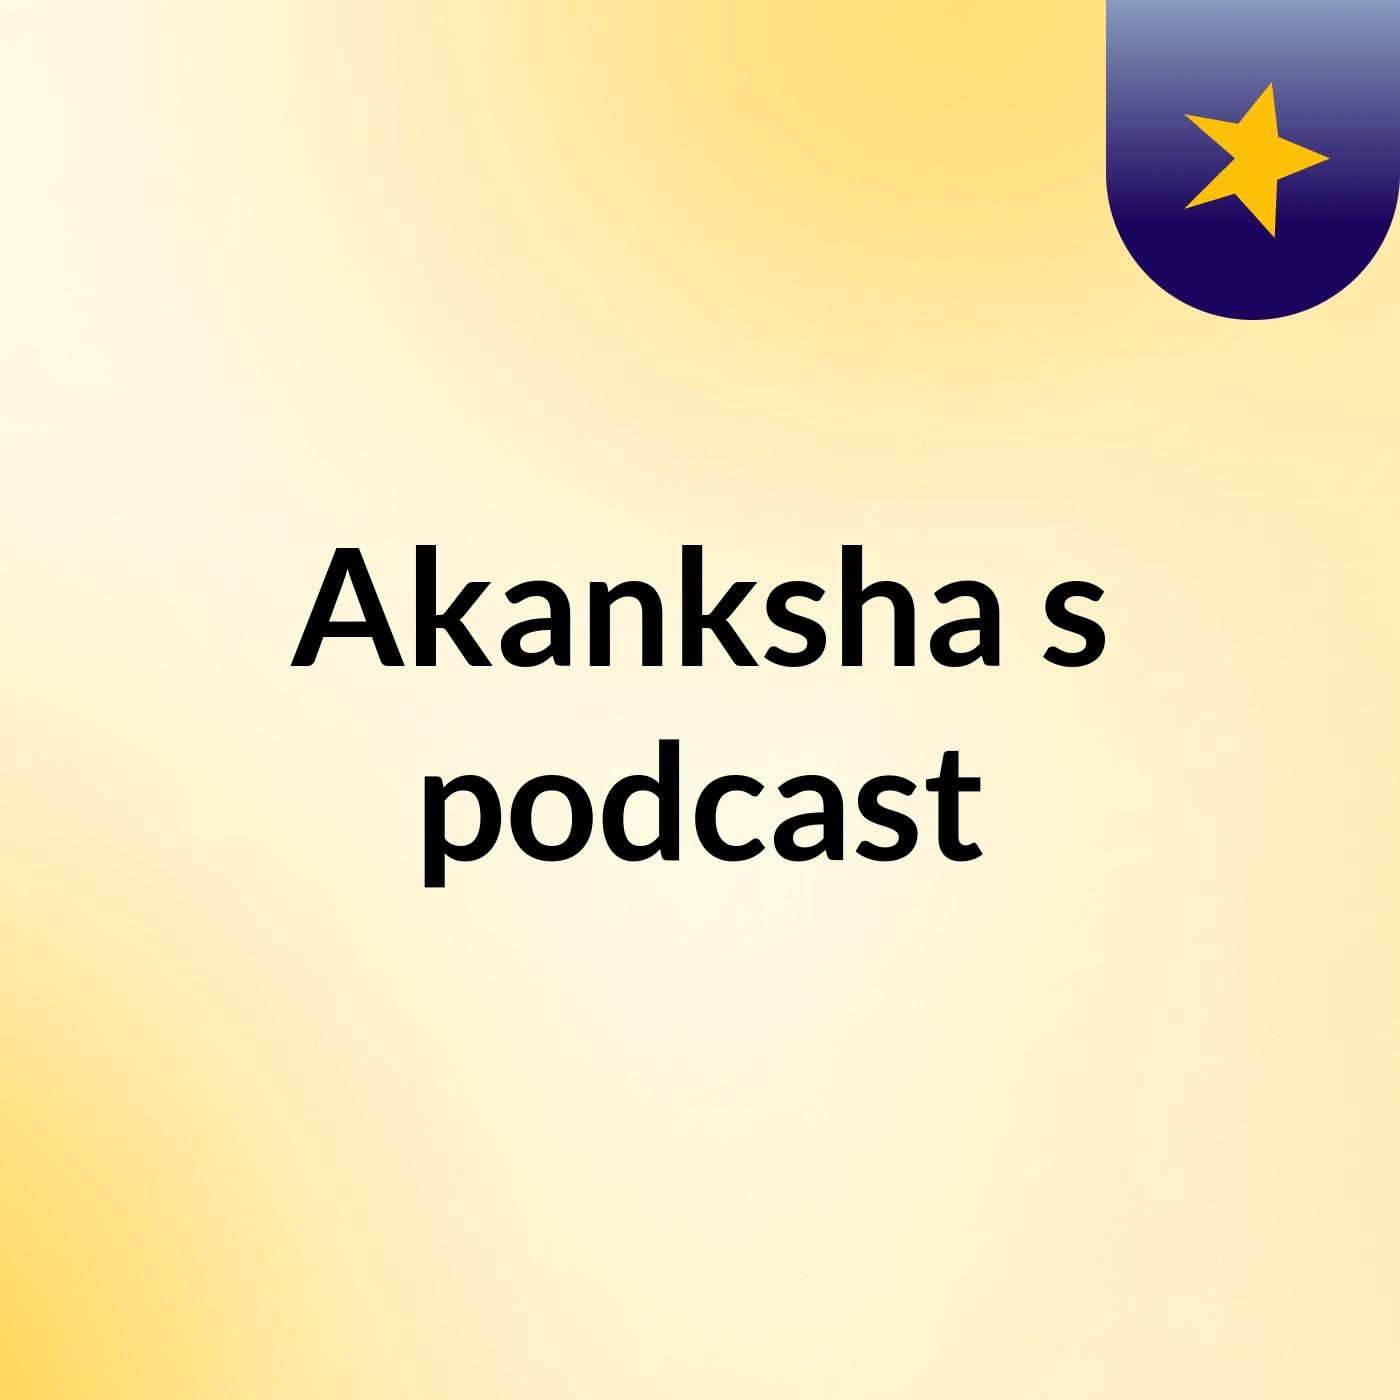 Akanksha's podcast